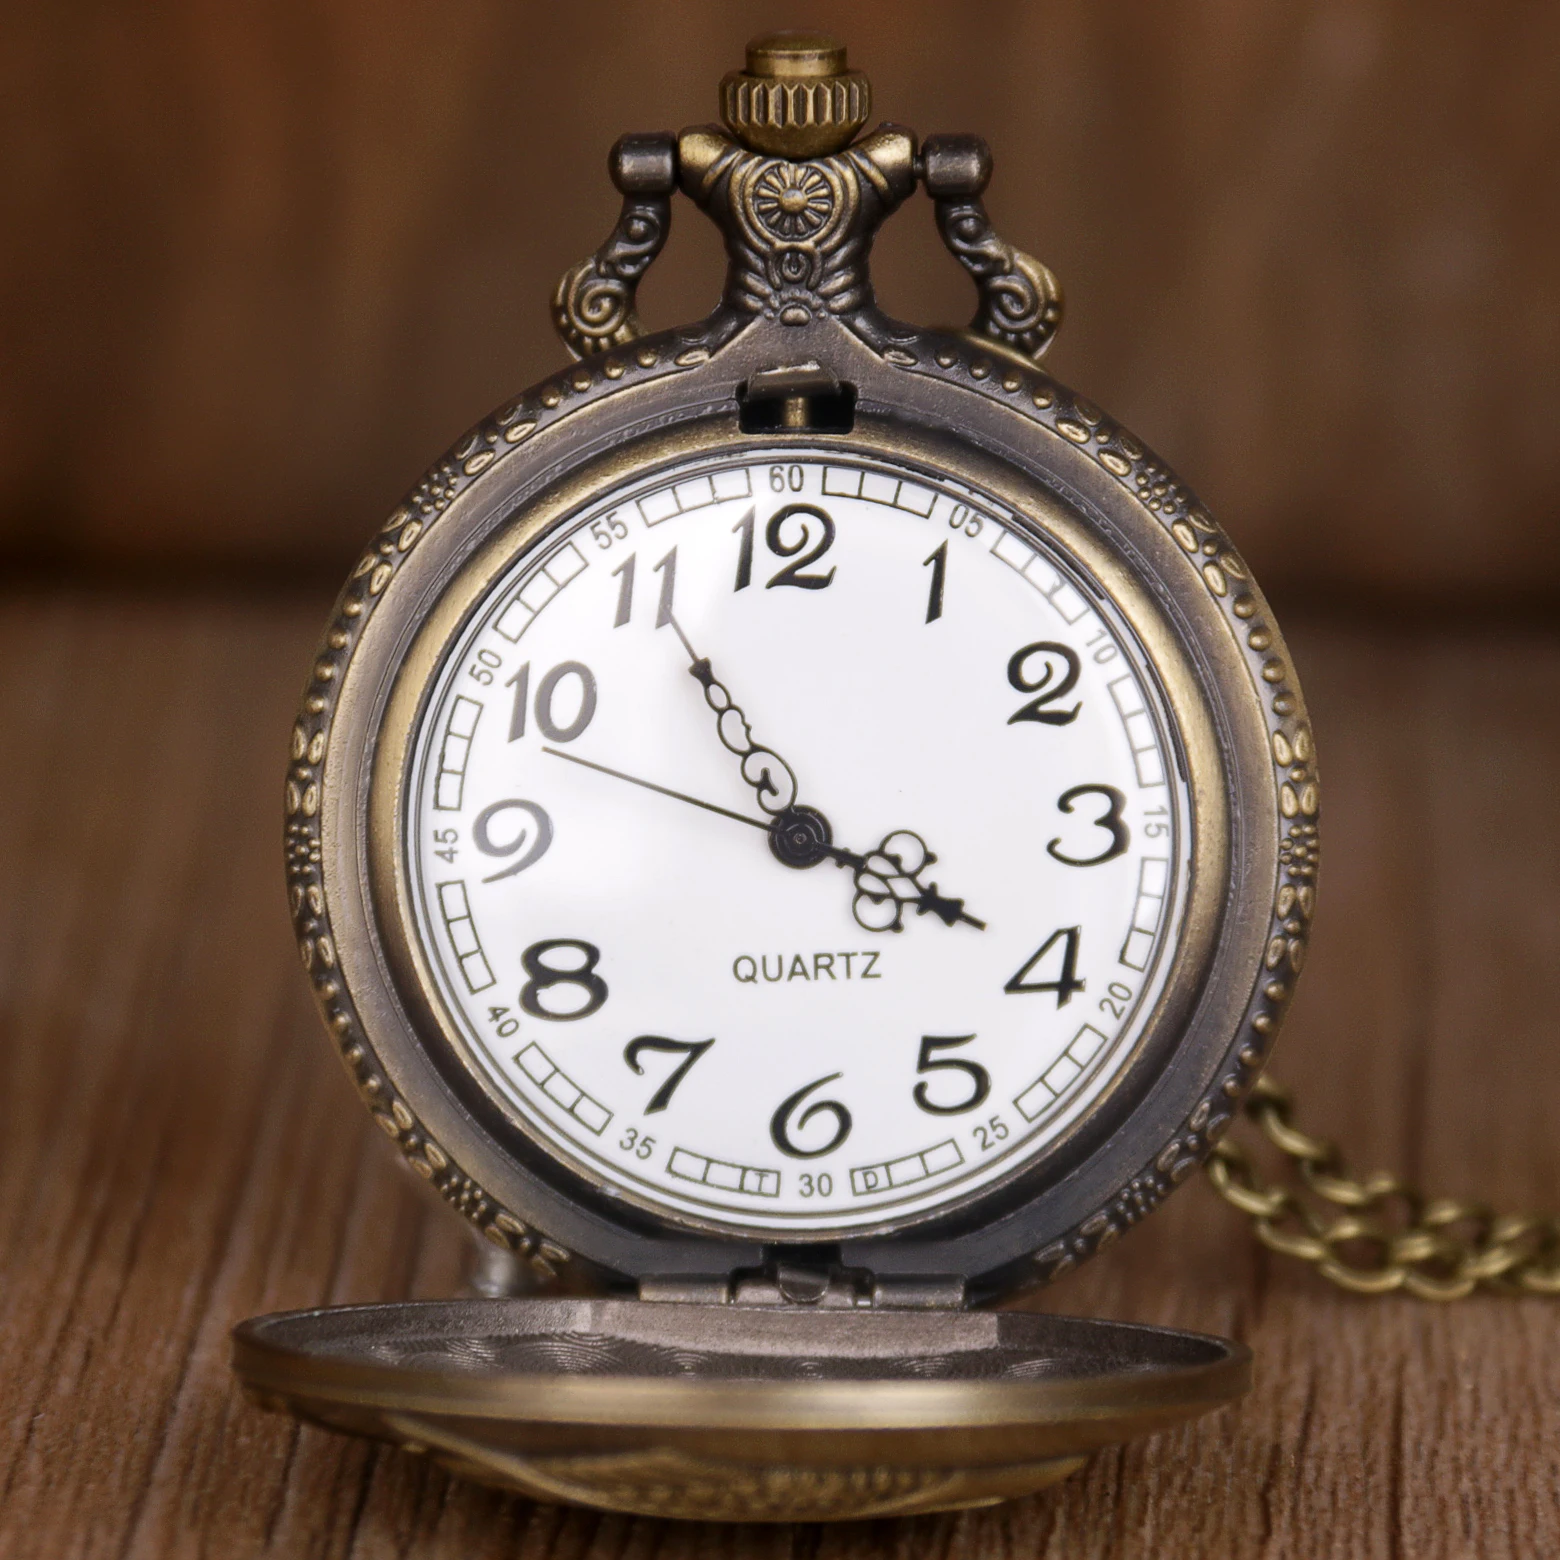 Новая мода Большой размер сова бронзовые кварцевые карманные часы аналоговый кулон ожерелье брелок цепи часы для мужчин и женщин детей